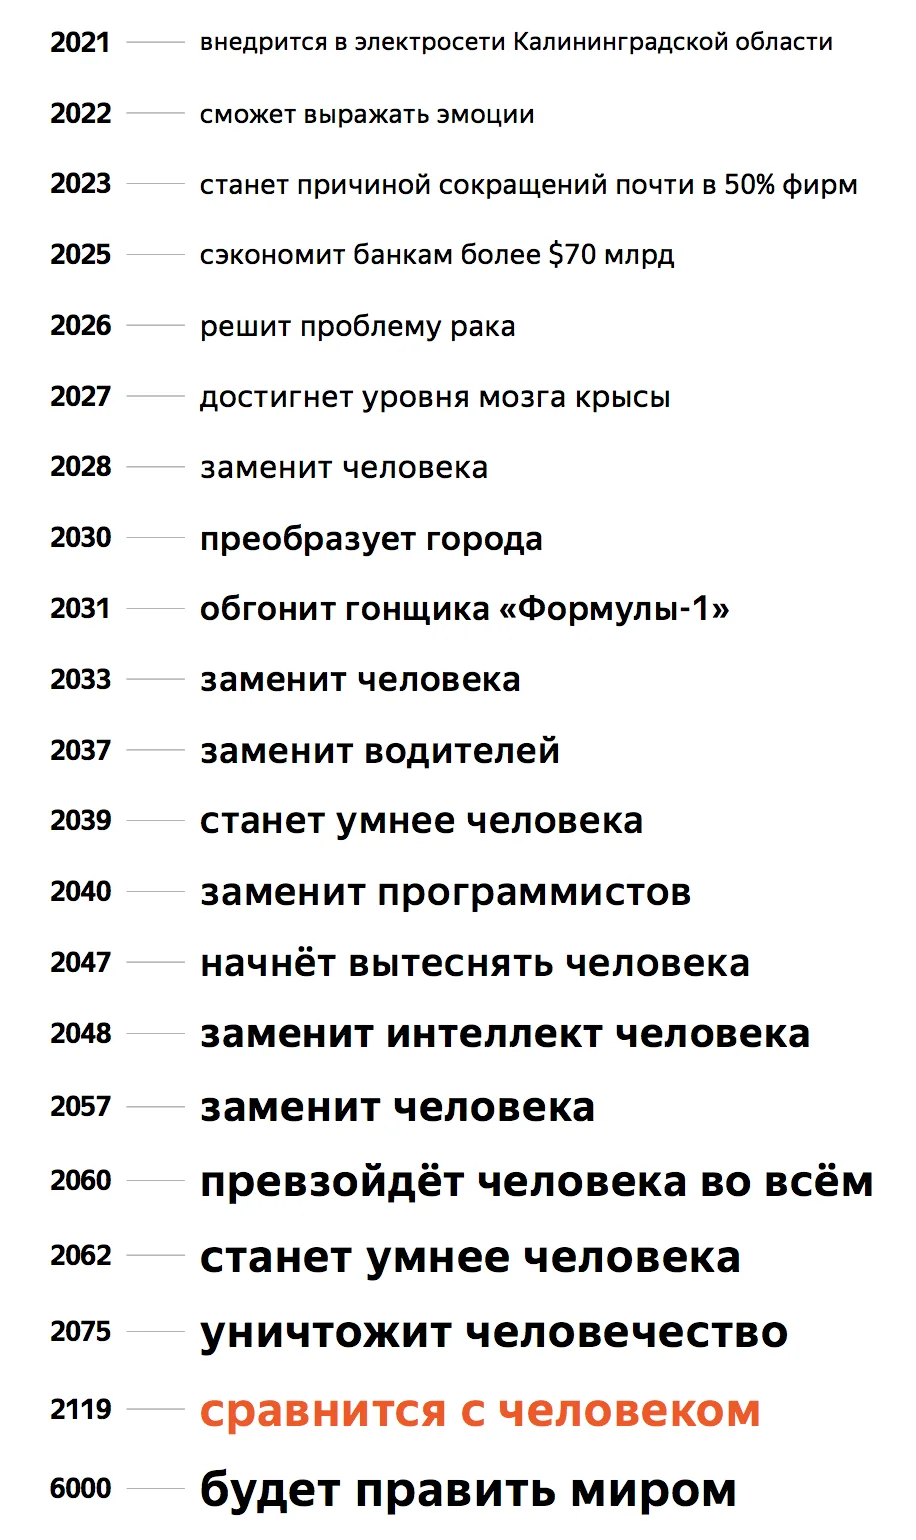 «Яндекс» выяснил, что произойдет с ИИ через 4000 лет, основываясь на заголовках новостей - фото 2